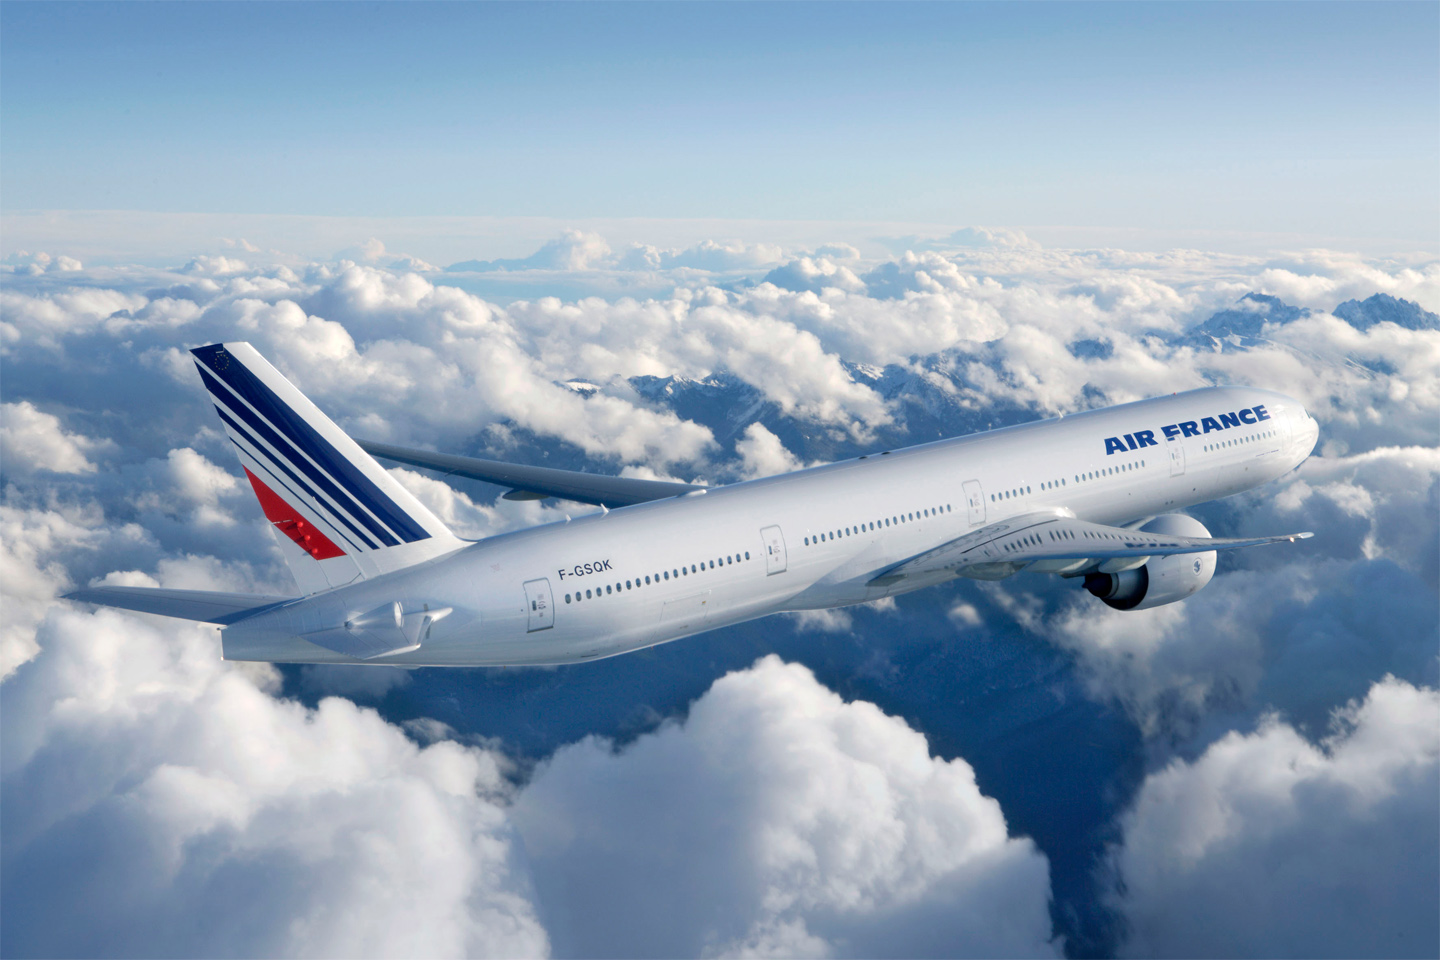 Oferta de la Air France pentru o vacanta de vis: bilet avion Bucuresti - Male by Perfect Tour